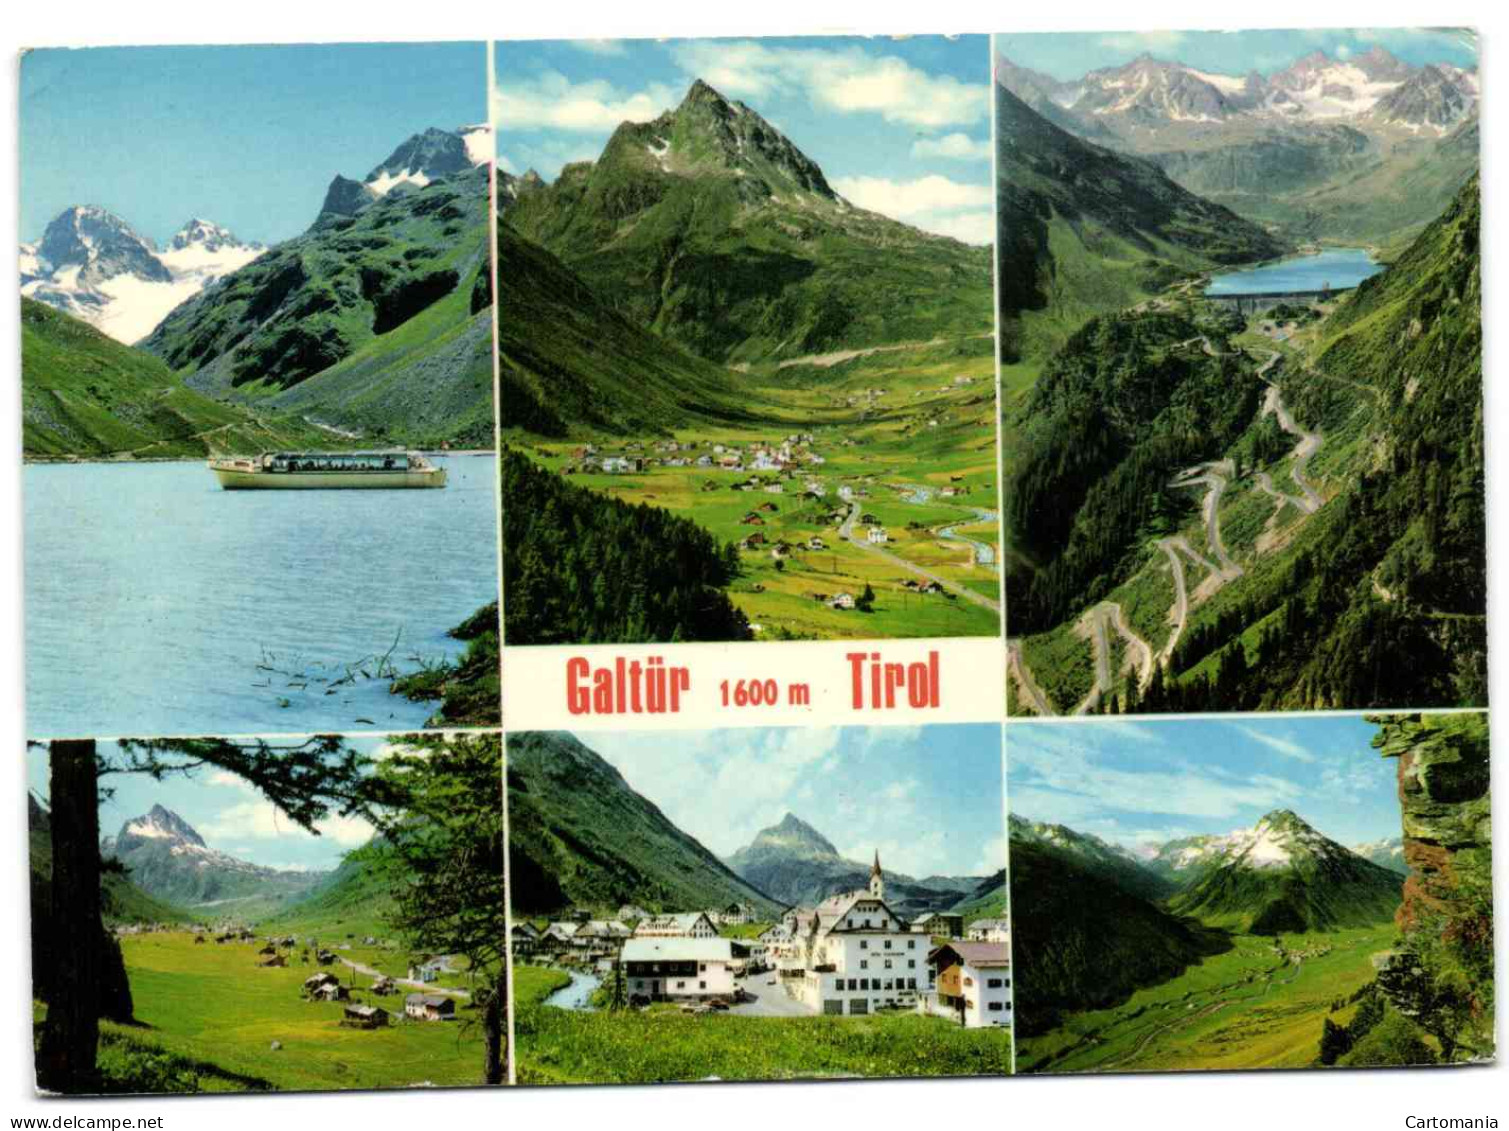 Galtür - Tirol - Galtür